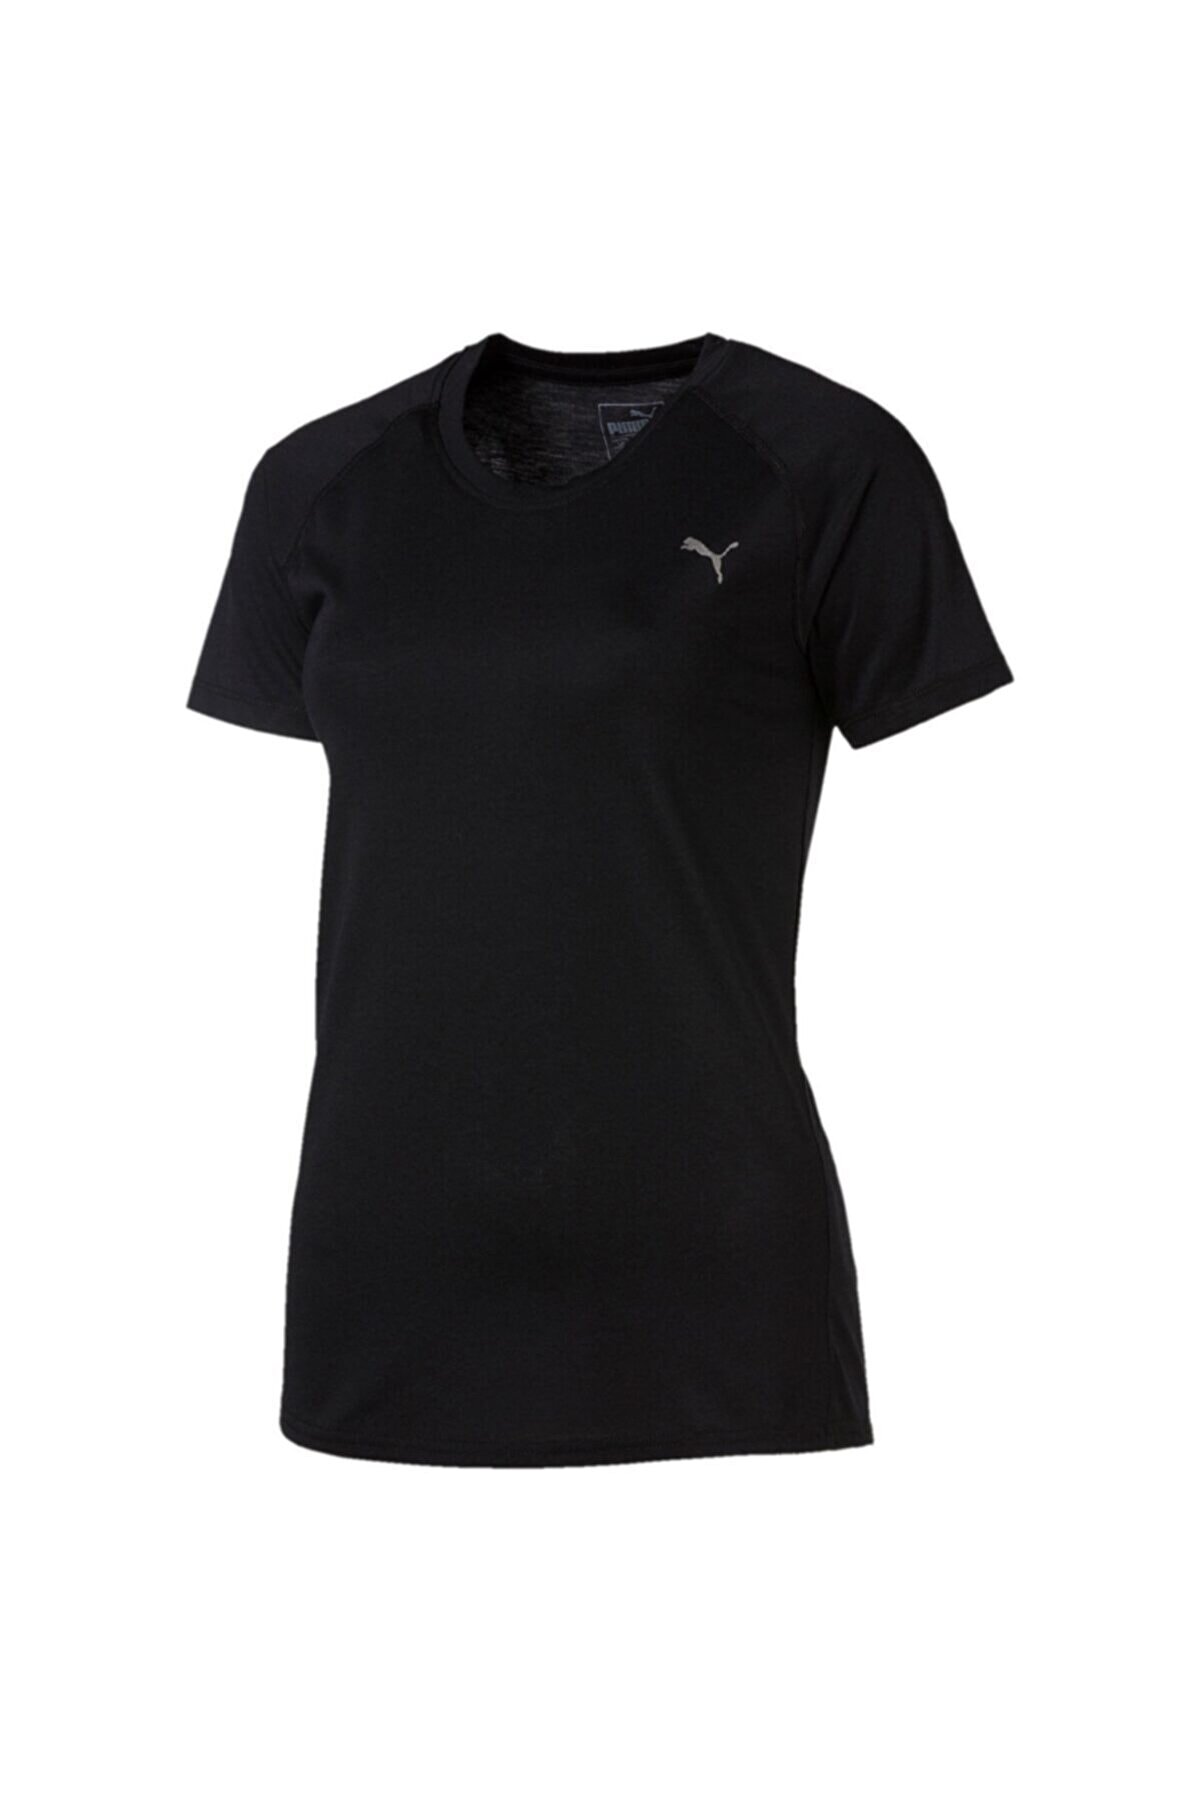 Puma A.C.E. RAGLAN Siyah Kadın T-Shirt 100409071